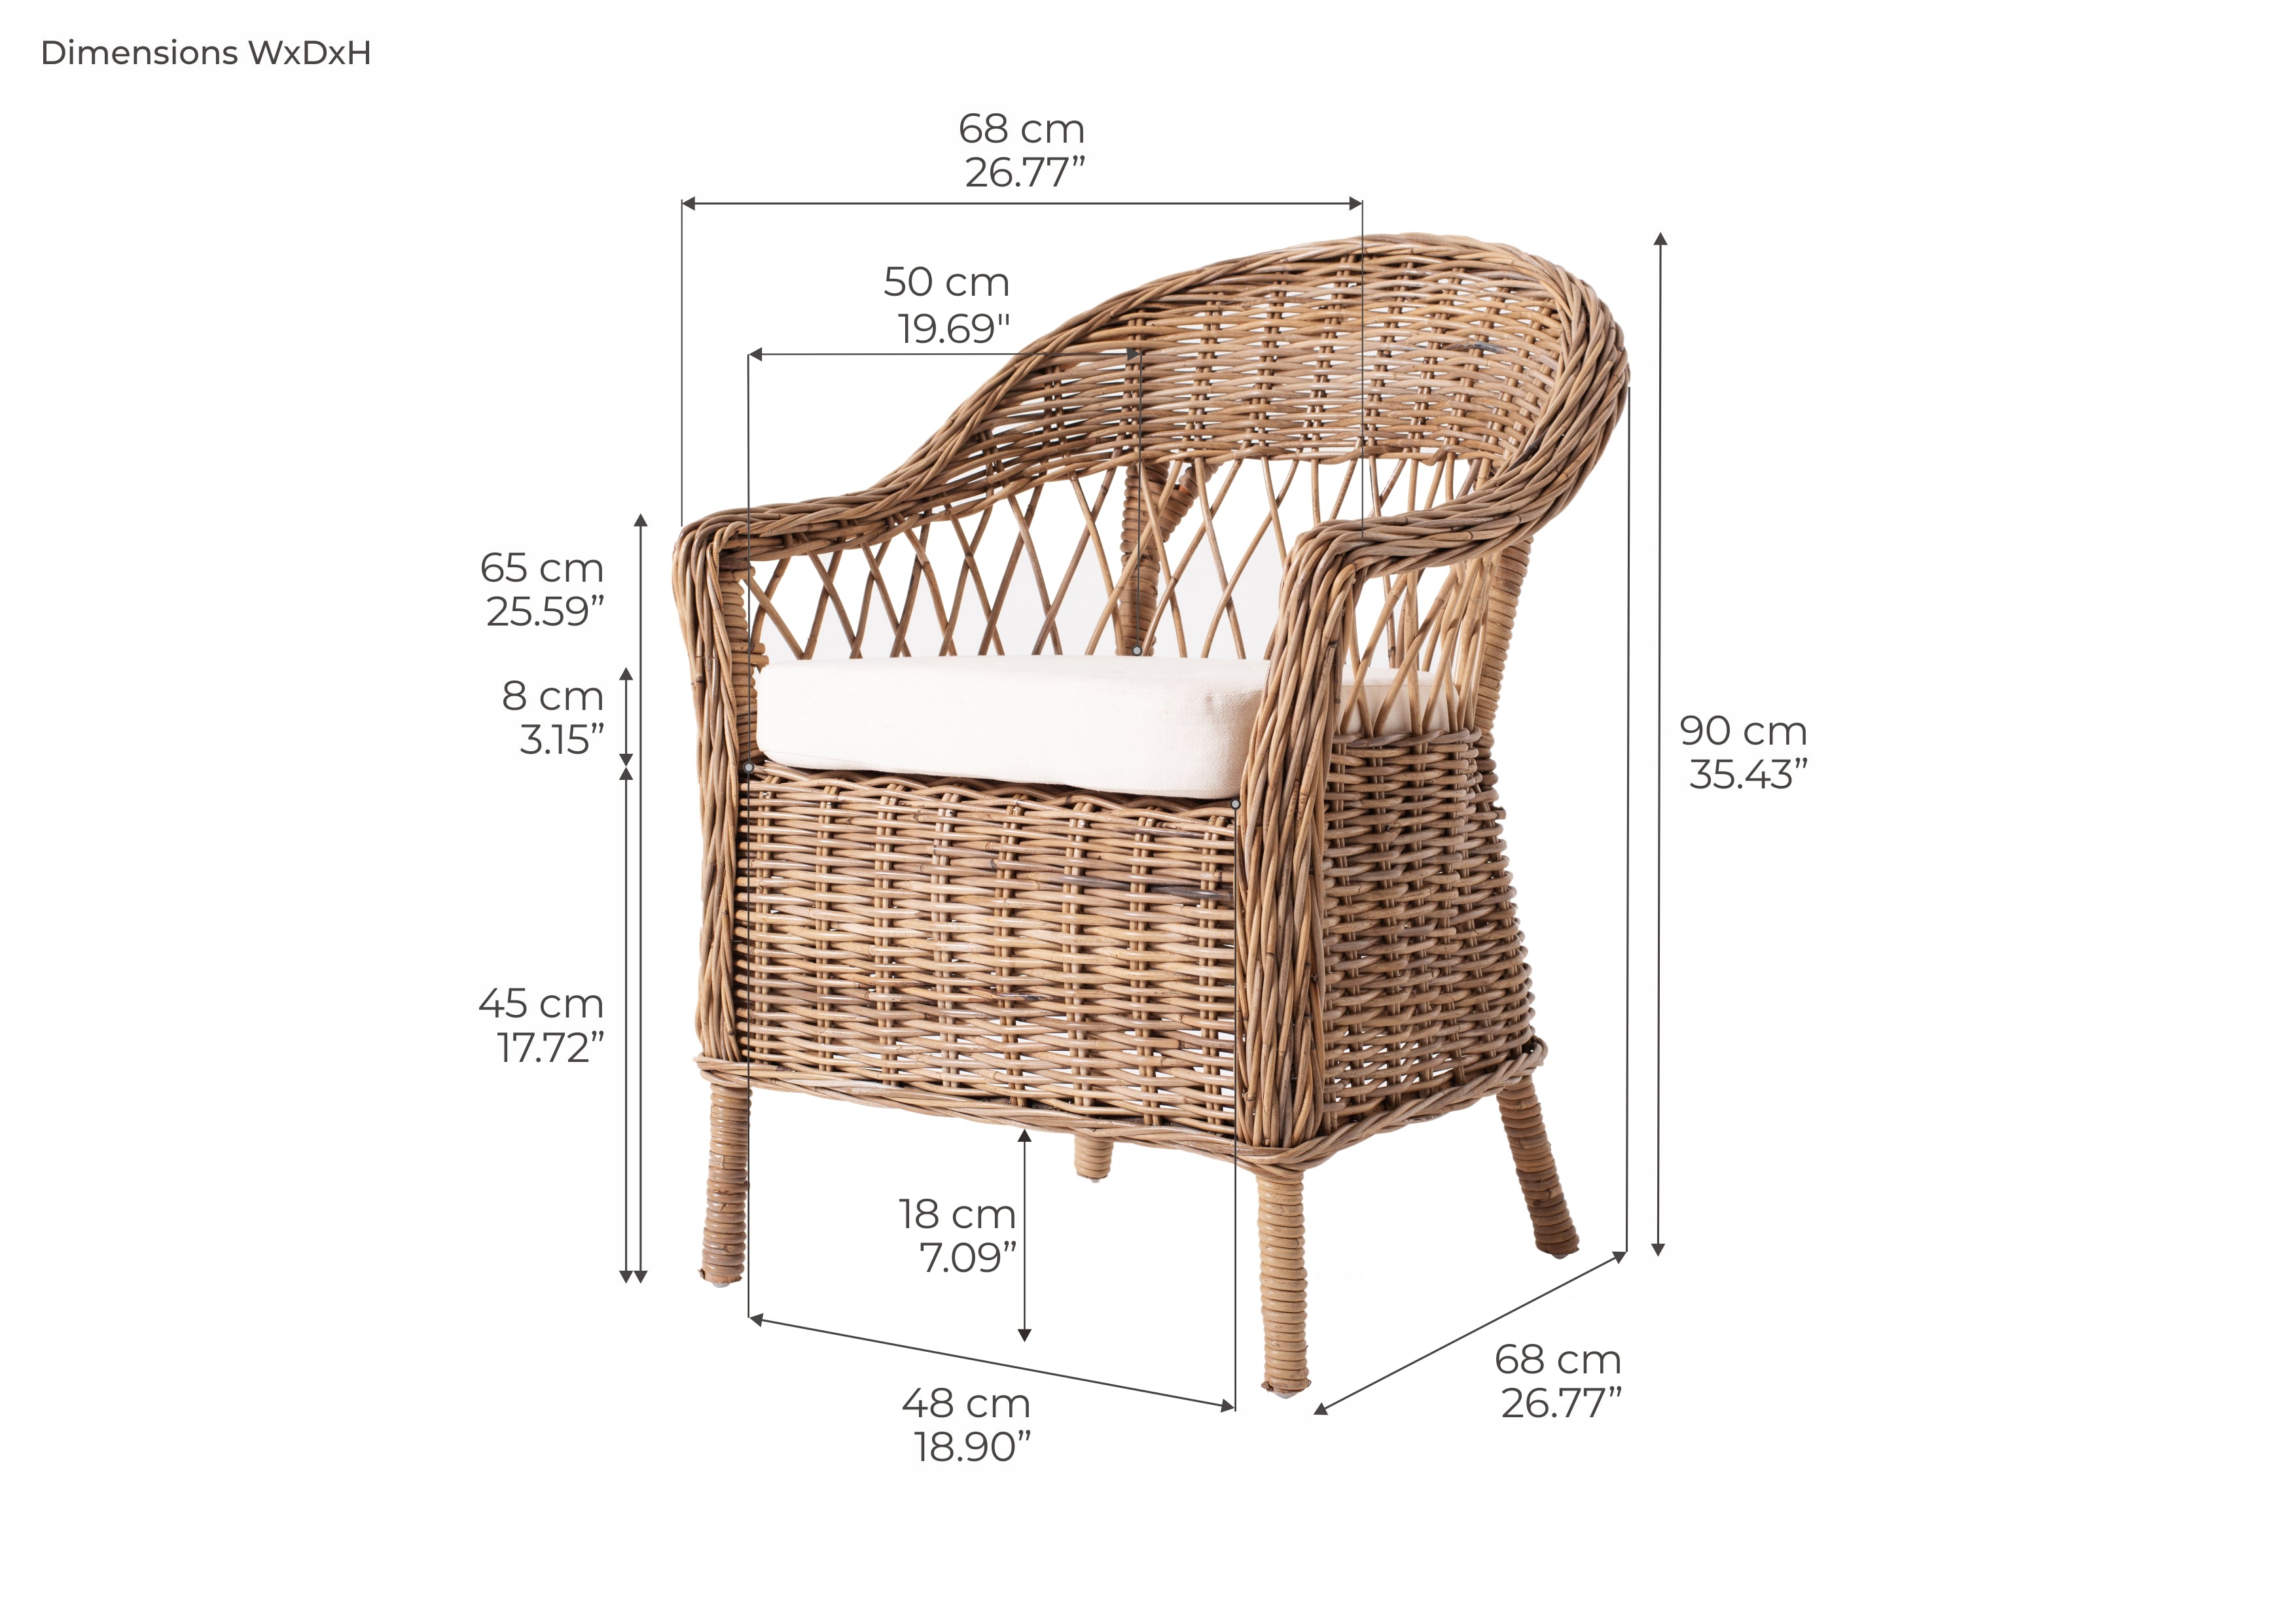 MONARCH Chair Dimensions